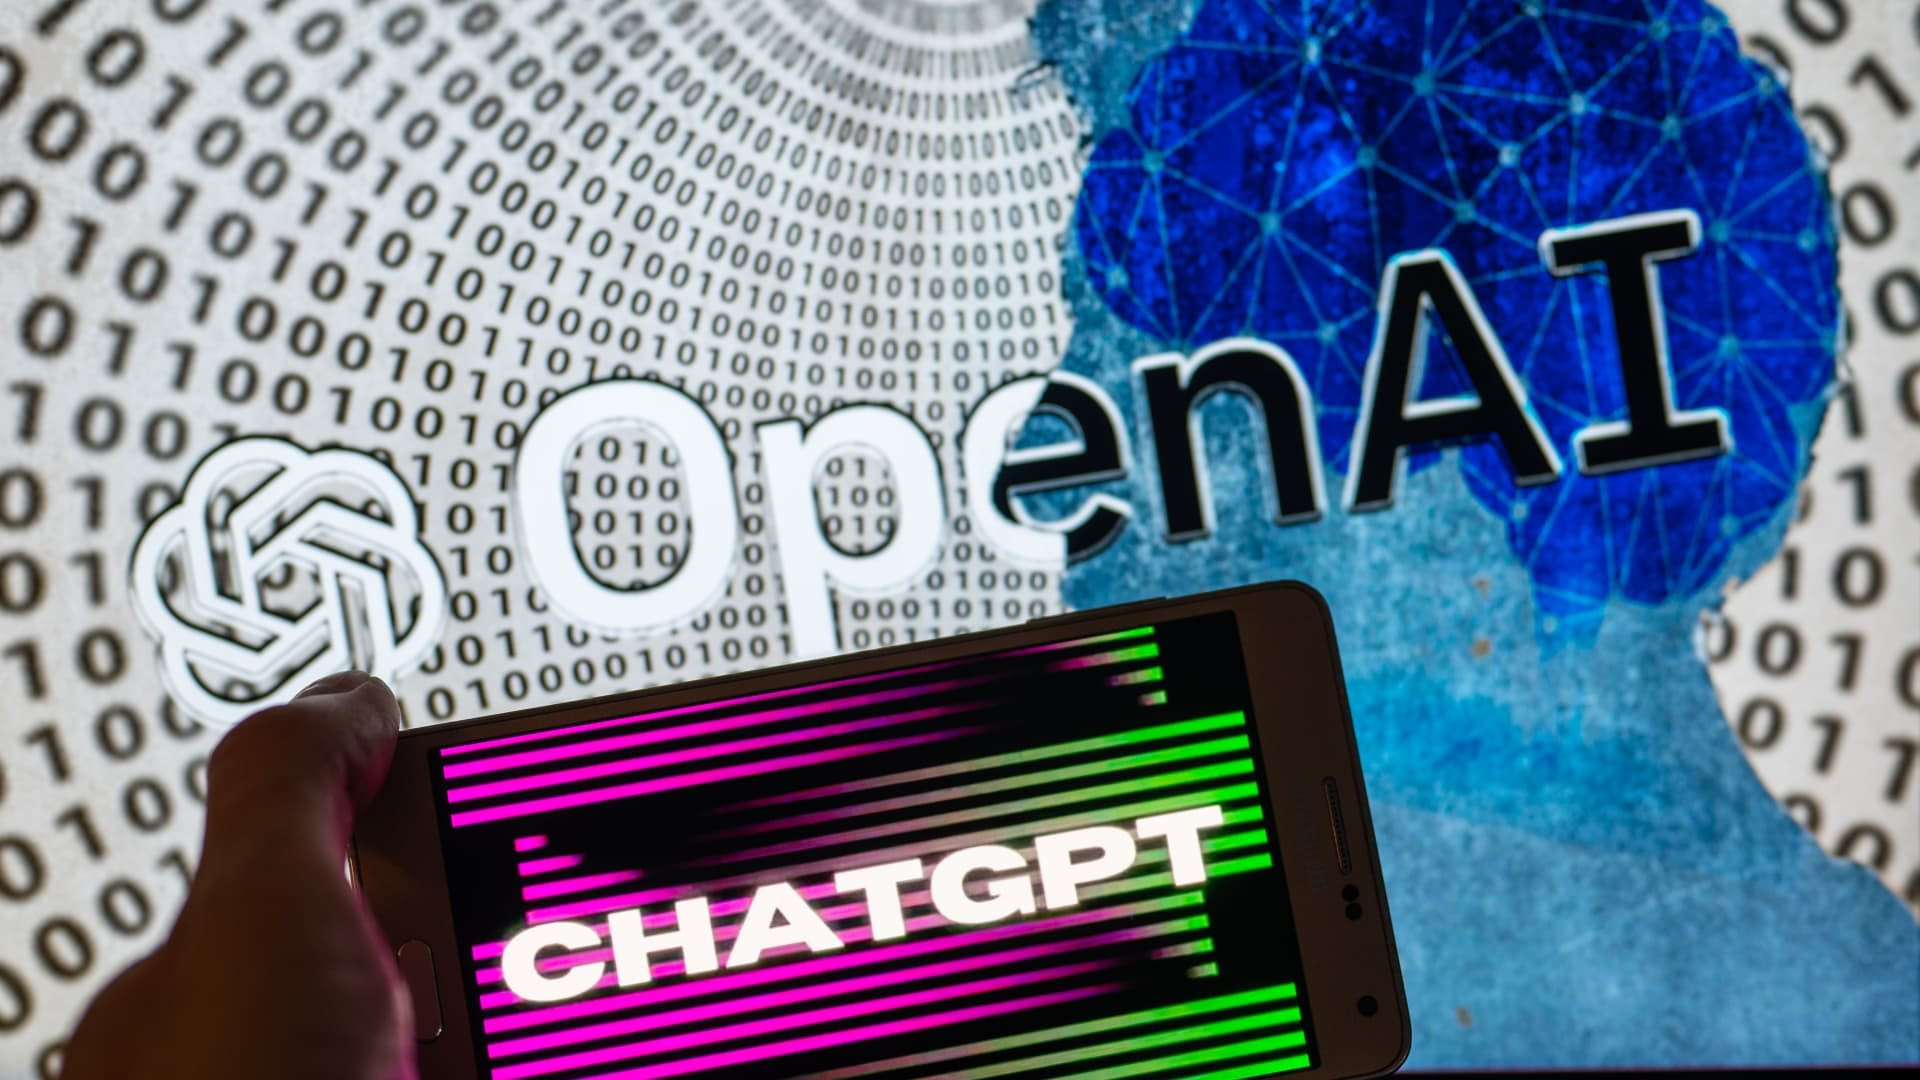 OpenAI bắt đầu kiếm tiền từ ChatGPT, tung ra gói ChatGPT Plus giúp người trả phí được ưu tiên truy cập chatbot AI - Ảnh 1.